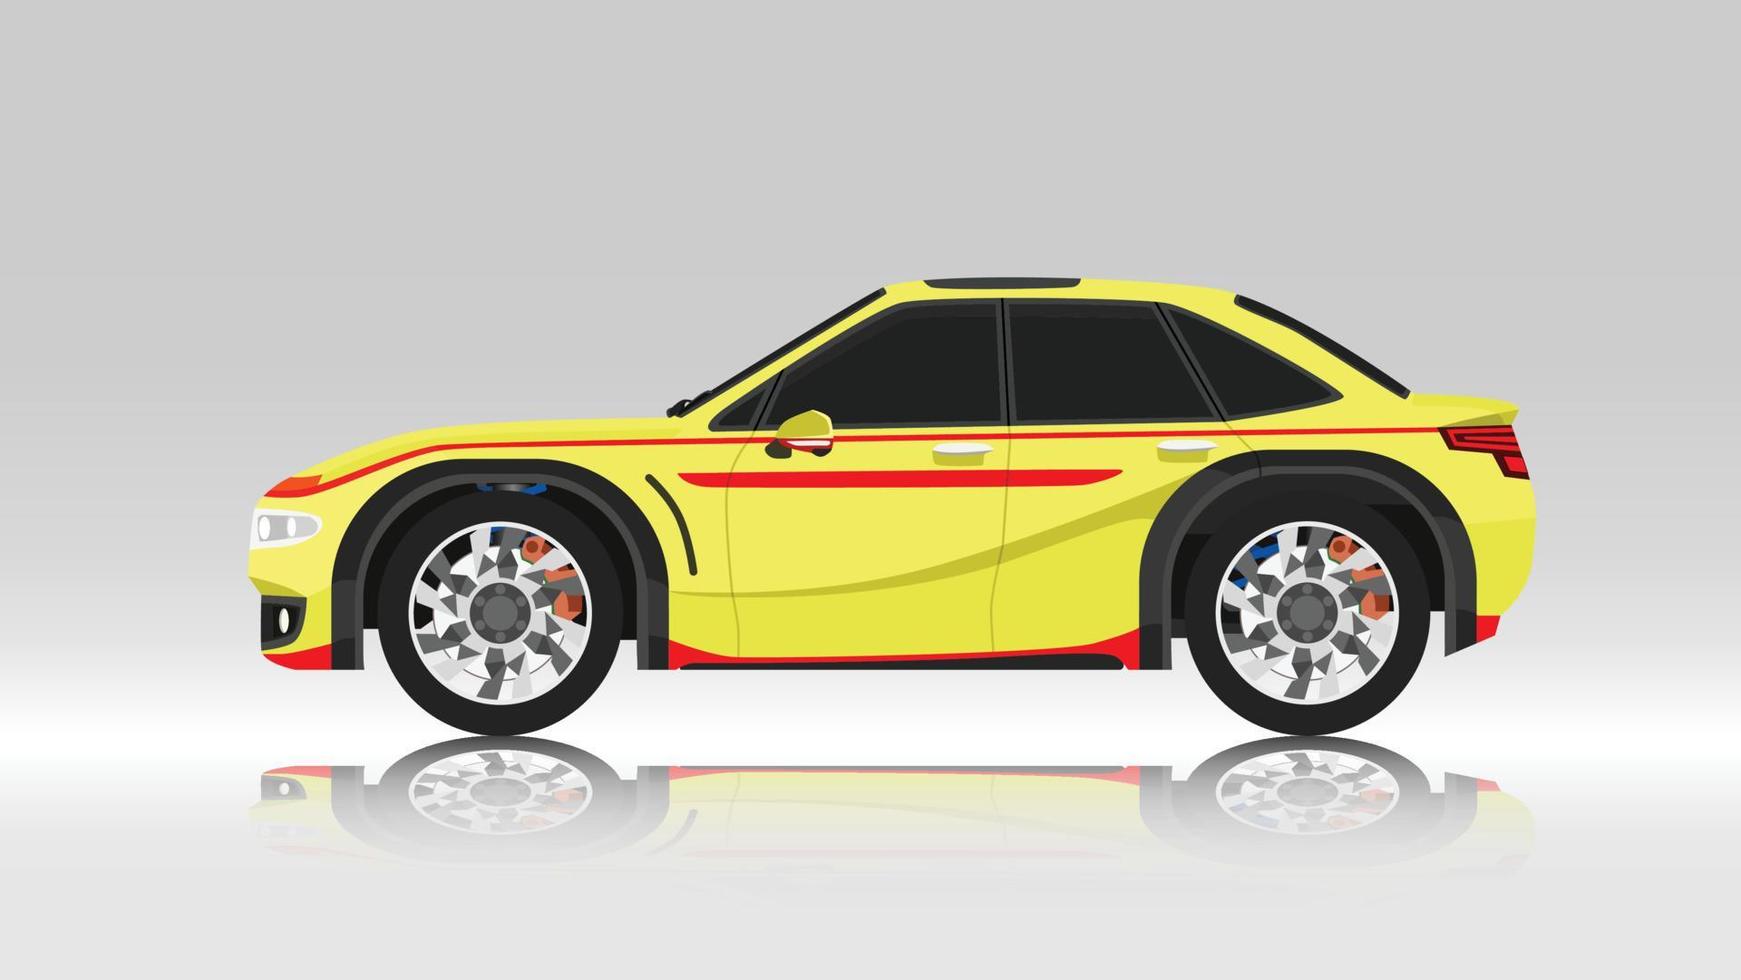 ilustração em vetor conceito da cor amarela do carro sedan com design de linha vermelha. com sombra de carro refletida do chão abaixo. e fundo branco isolado.